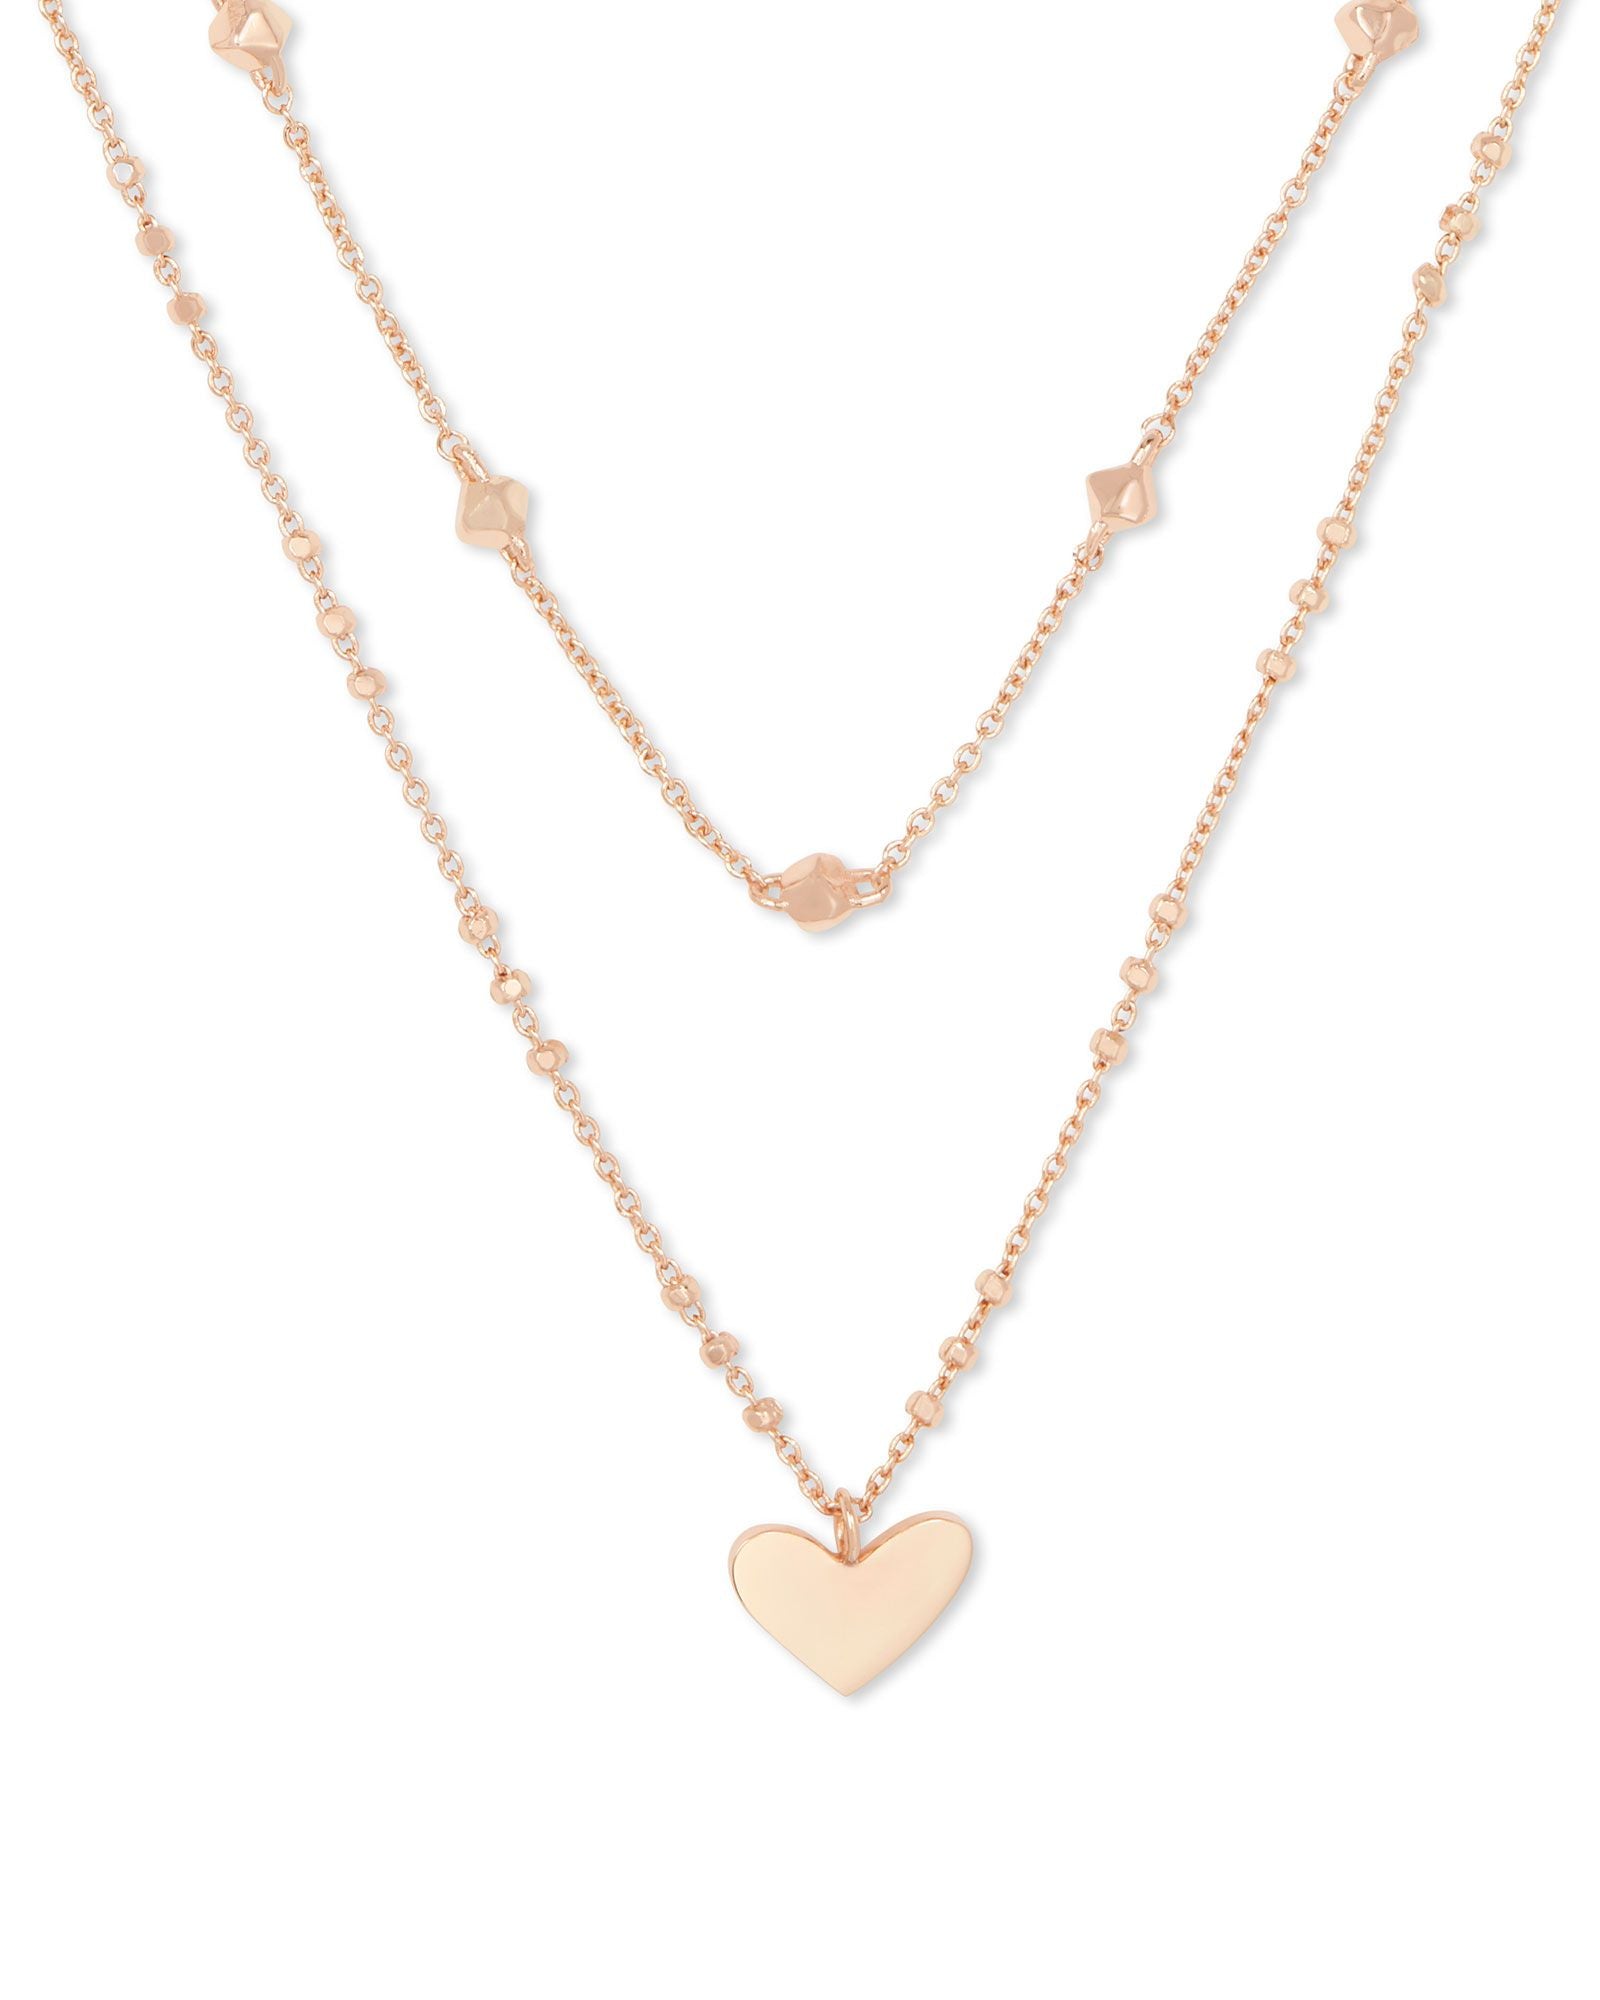 Ari Heart Multi Strand Necklace - more colors